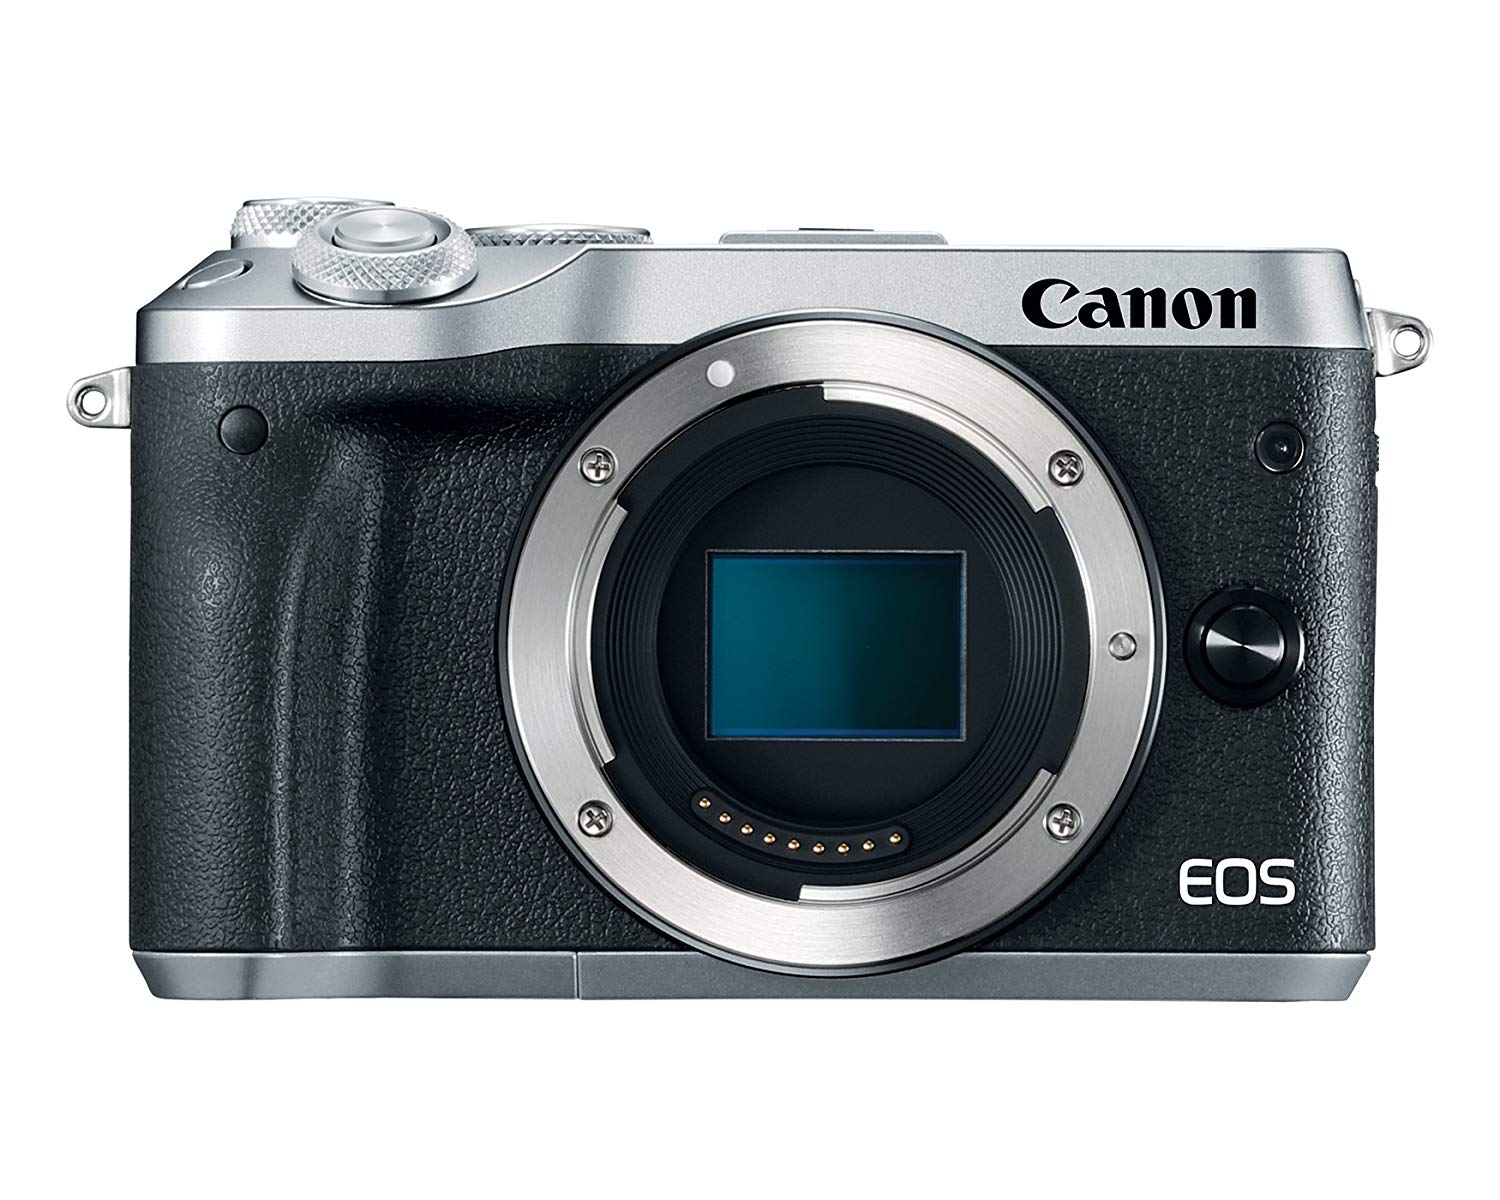 Canon EOS M6 본체 (실버)